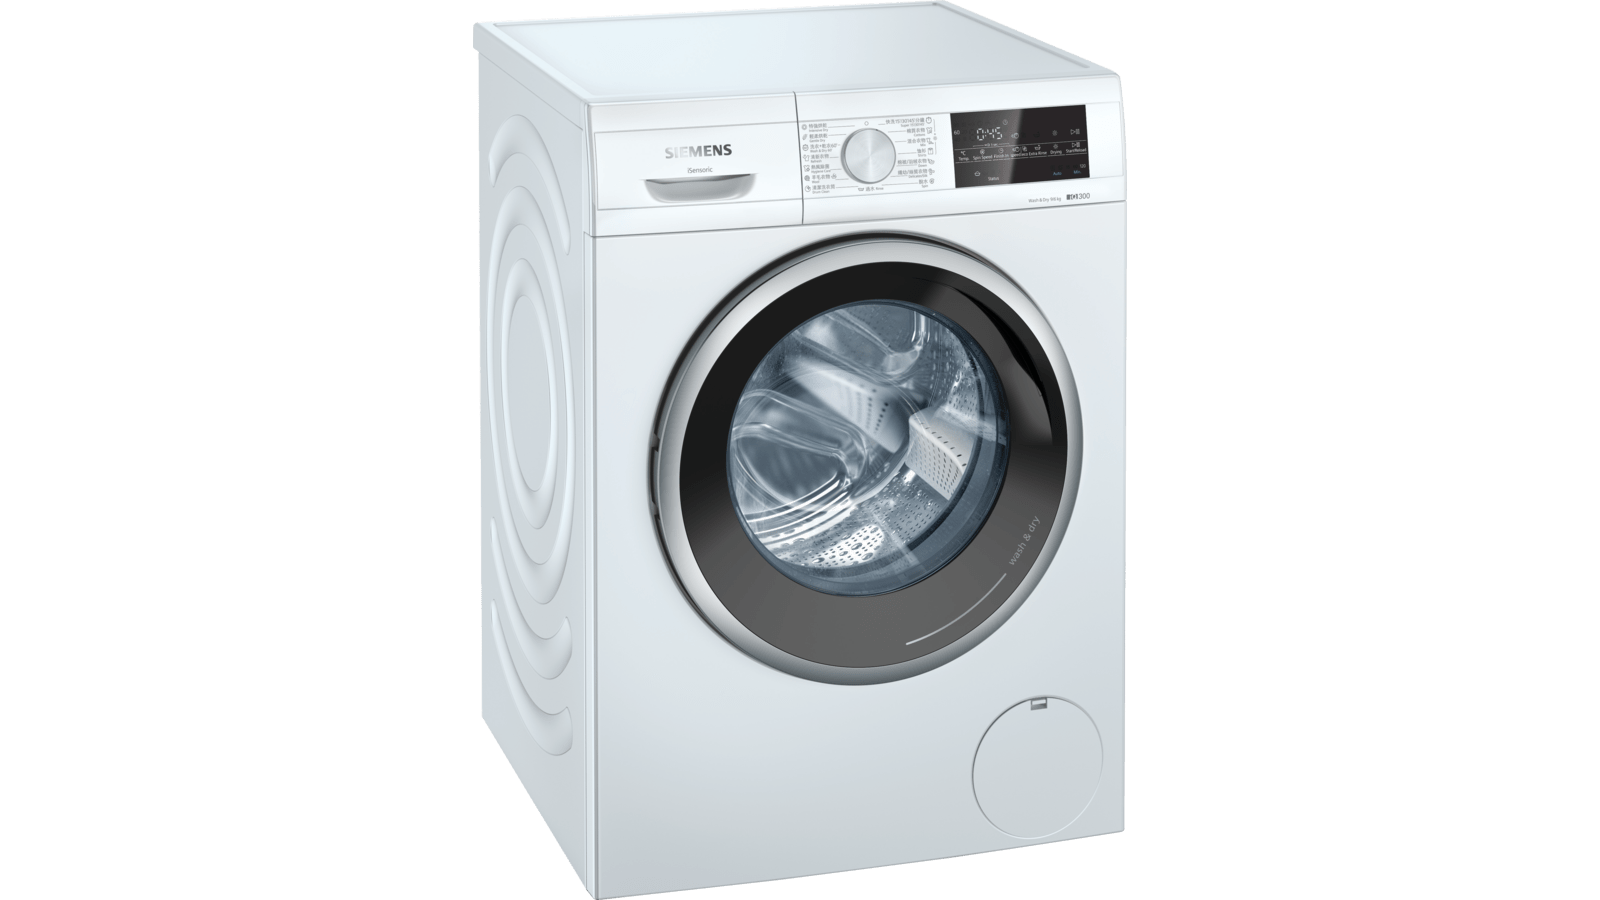 WN44A2X0HK 洗衣乾衣機| Siemens Home Appliances HK